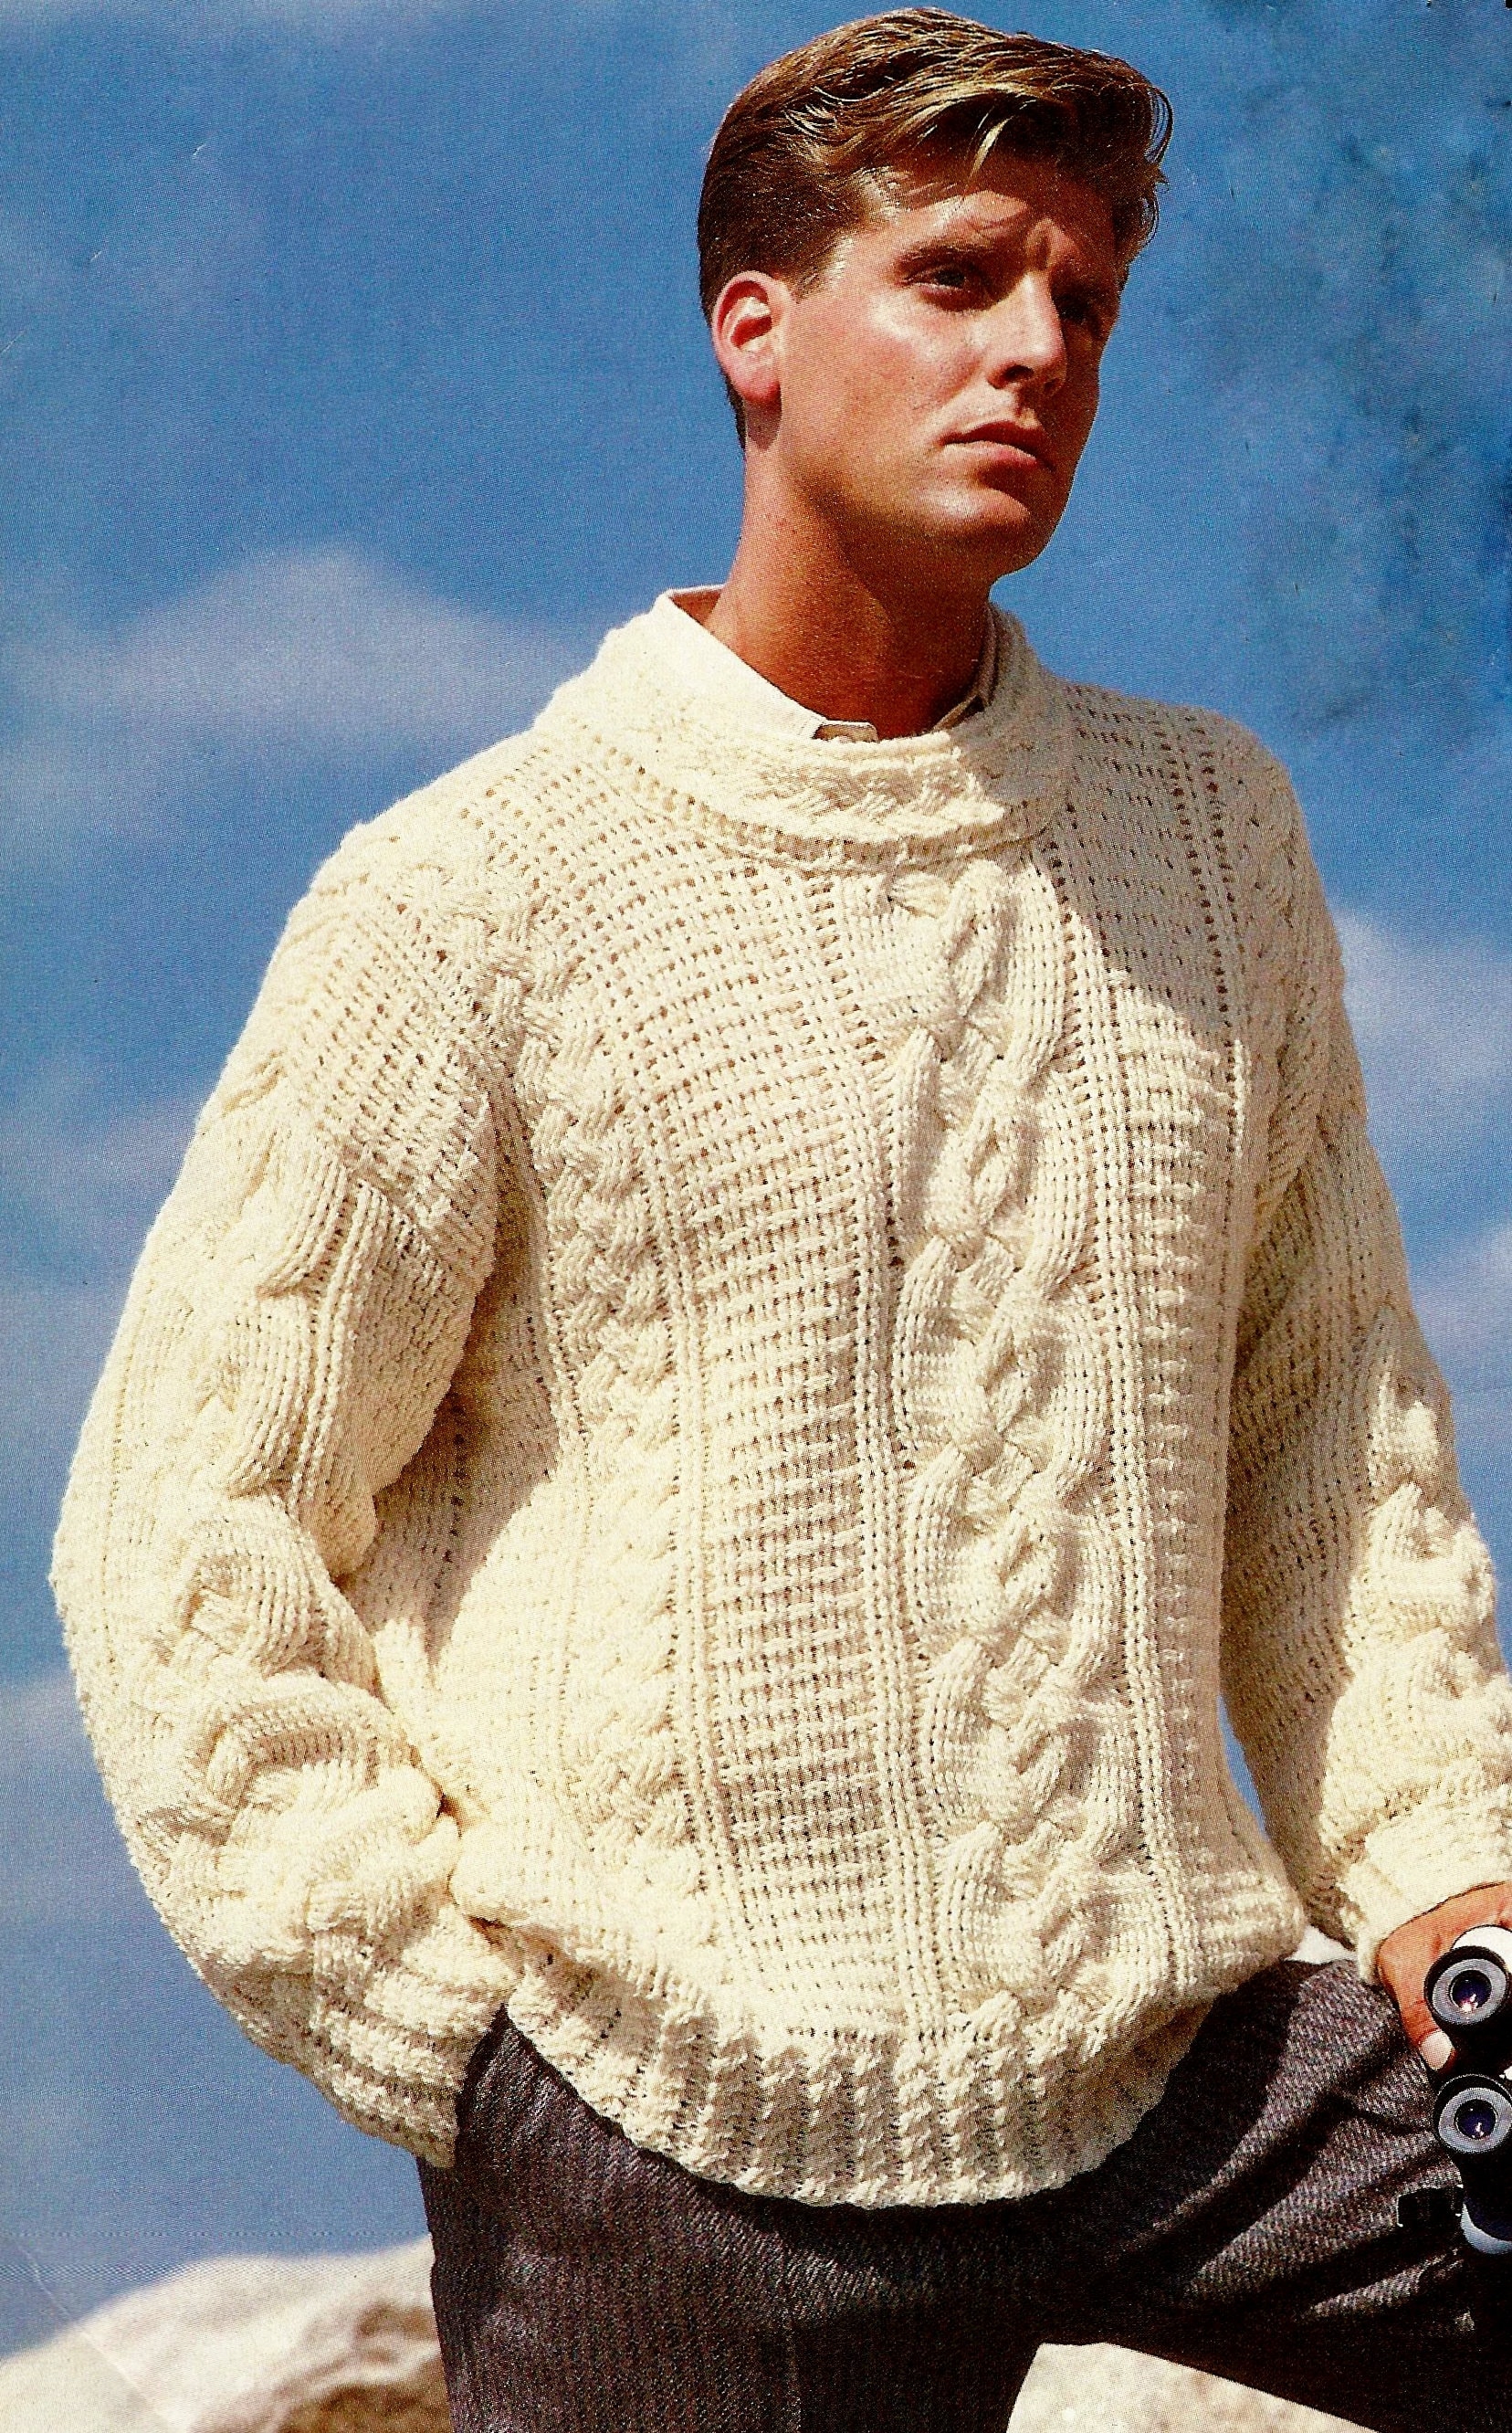 Men's Crochet Fisherman Sweater Vintage Crochet Pattern | Etsy